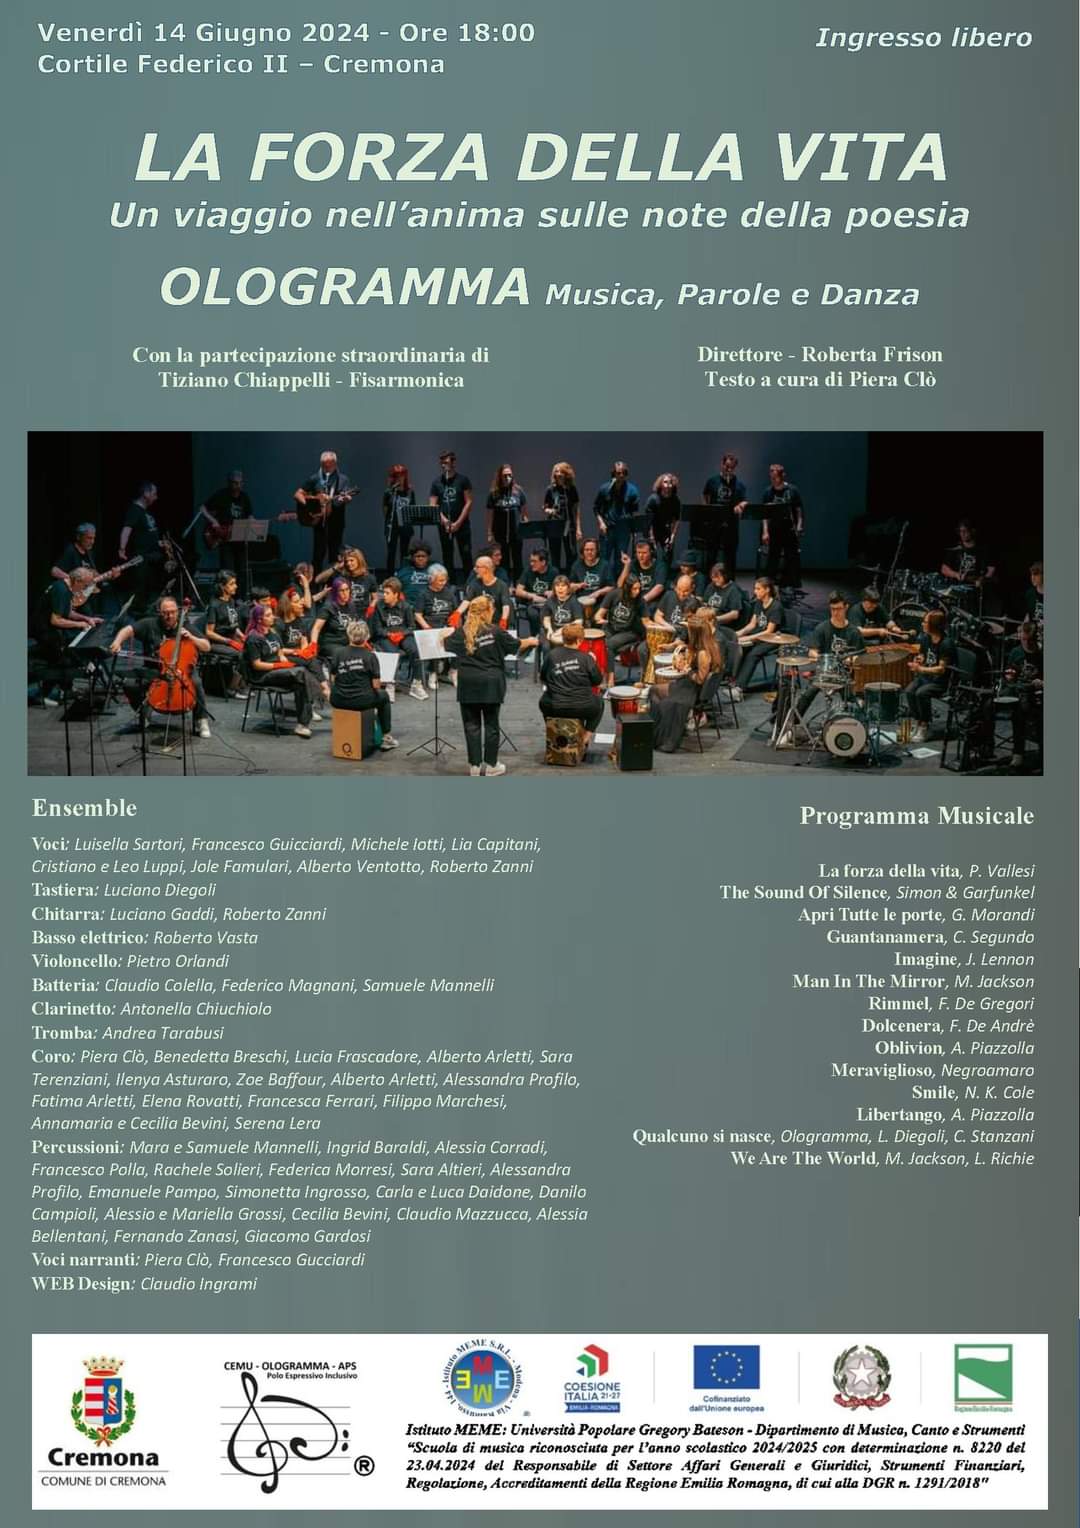 OLOGRAMMA – La forza della vita – Cremona